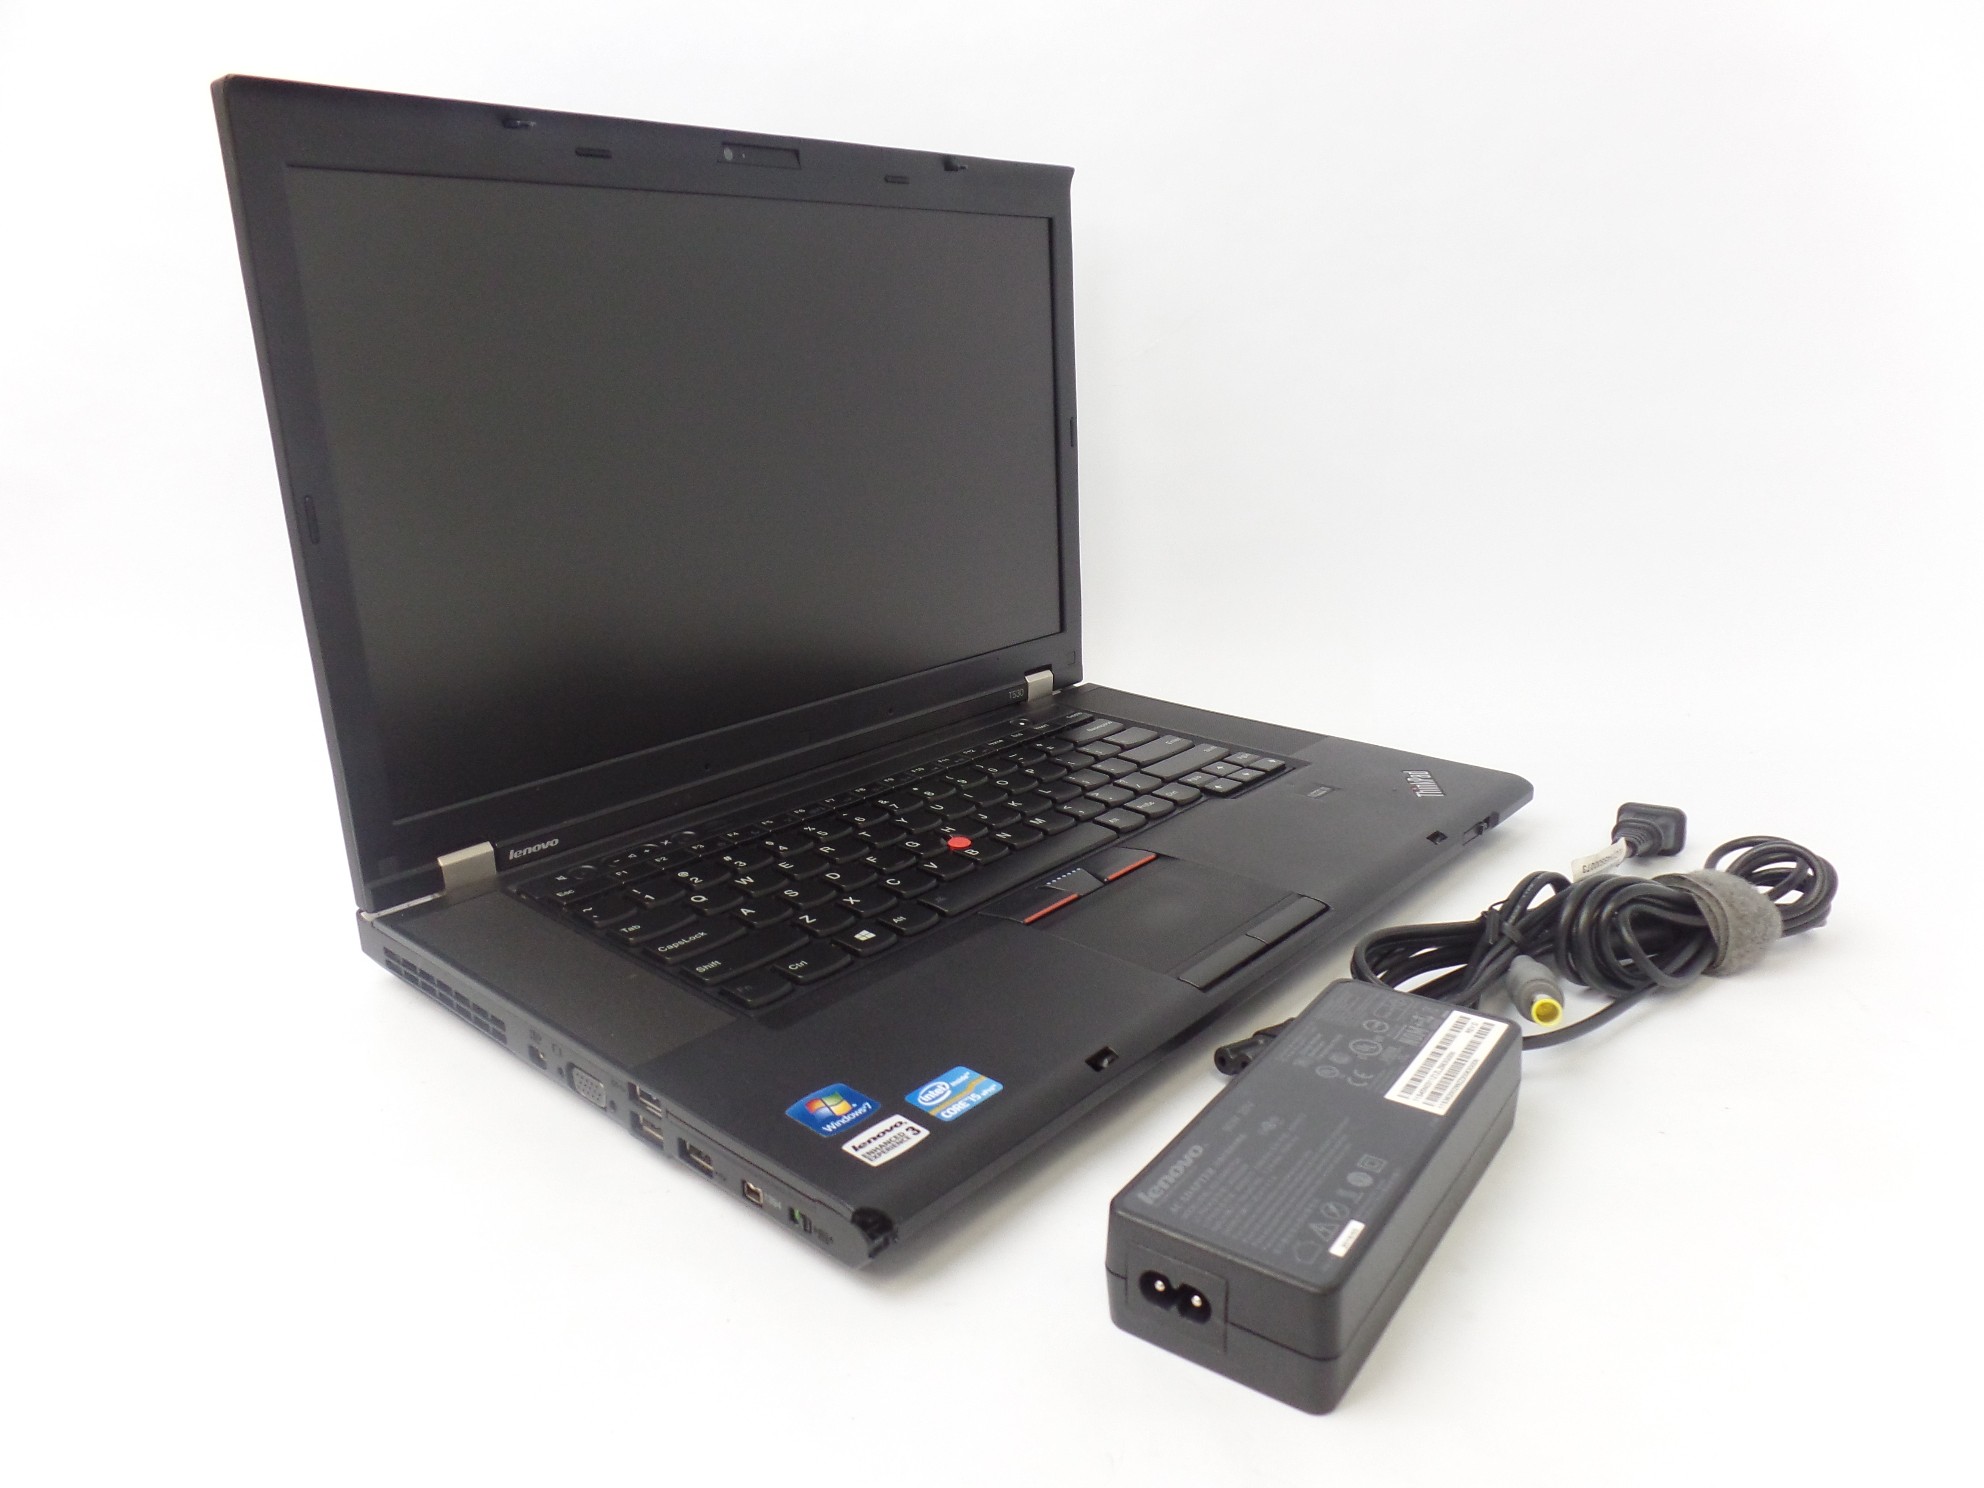 Lenovo Thinkpad T530 15.6" HD i5-3320U 2.6GHz 4GB 320GB NVS 5400M W7P Laptop U1